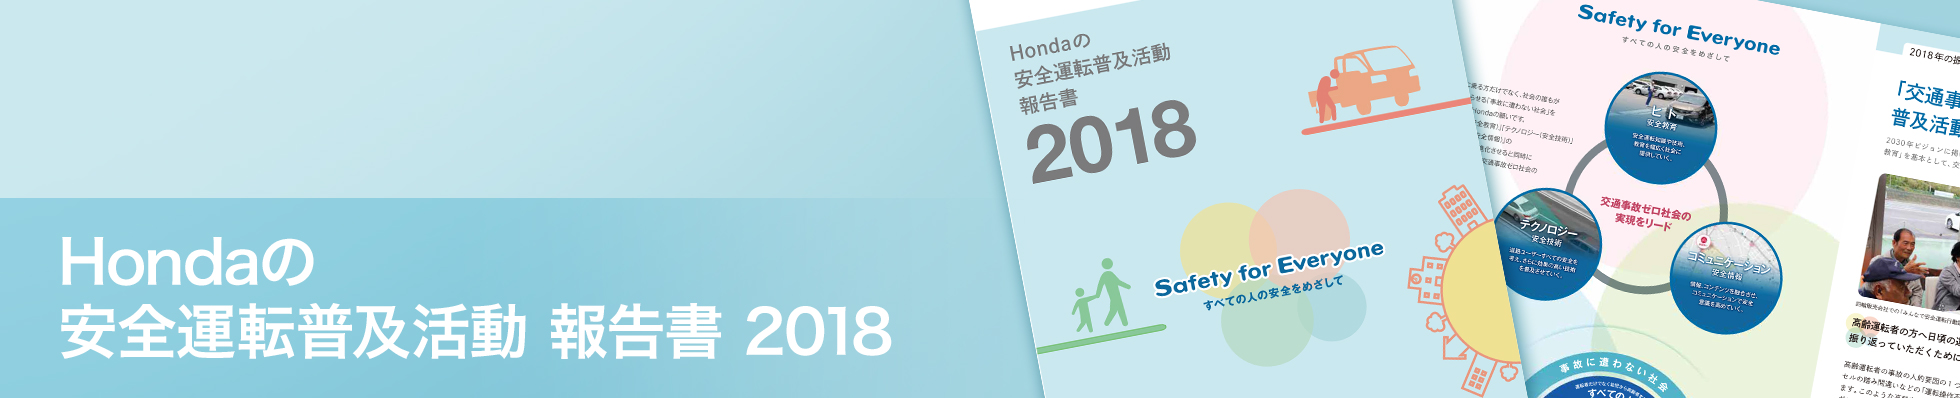 Hondaの安全運転普及活動 報告書 2018